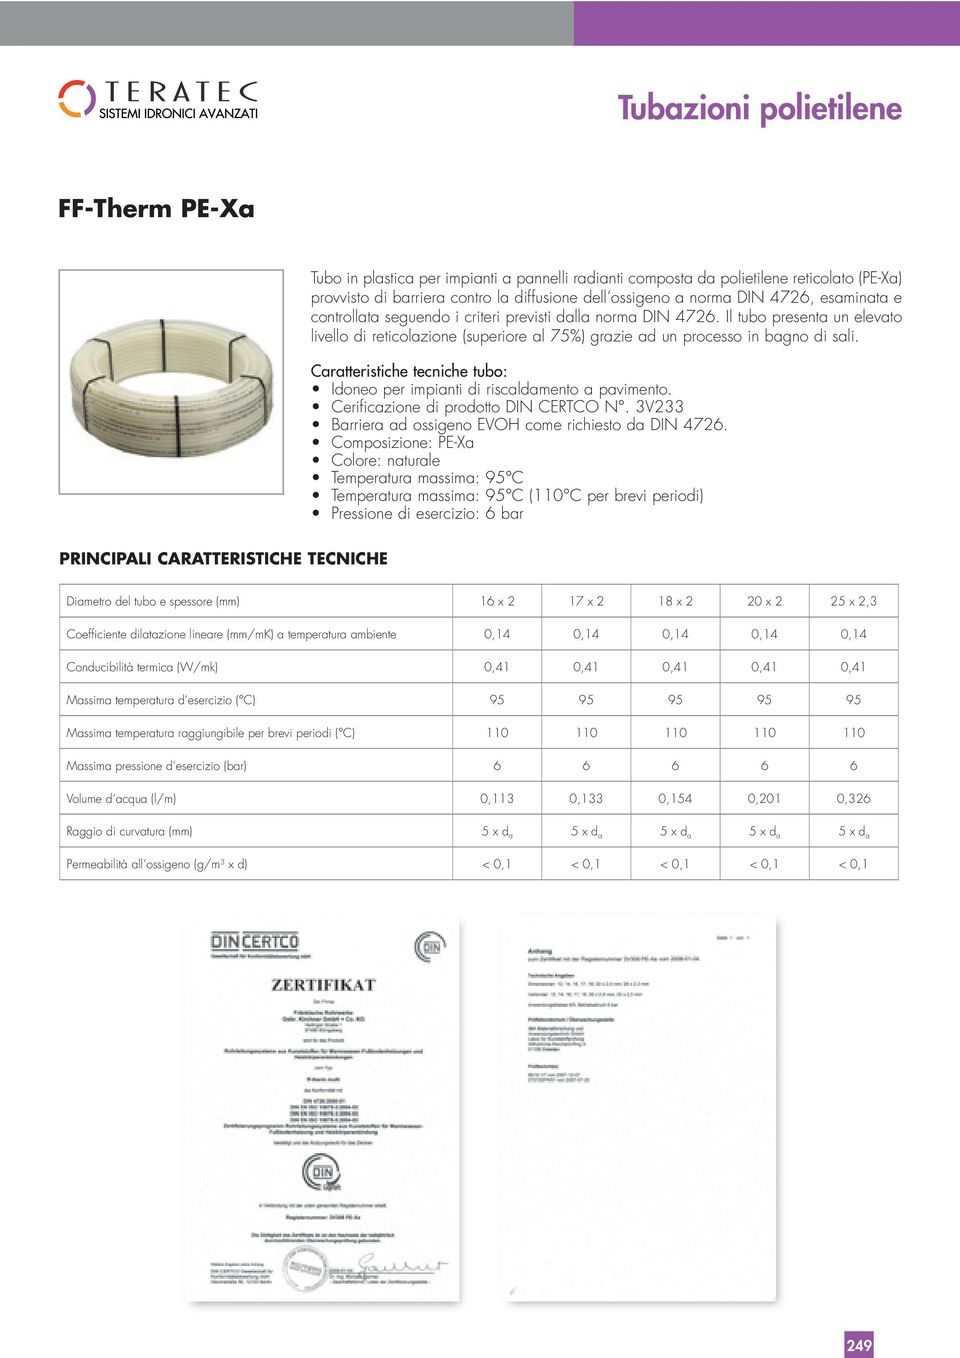 Caratteristiche tecniche tubo: PRINCIPALI CARATTERISTICHE TECNICHE Diametro del tubo e spessore (mm) 16 x 2 17 x 2 18 x 2 20 x 2 25 x 2,3 Coefficiente dilatazione lineare (mm/mk) a temperatura